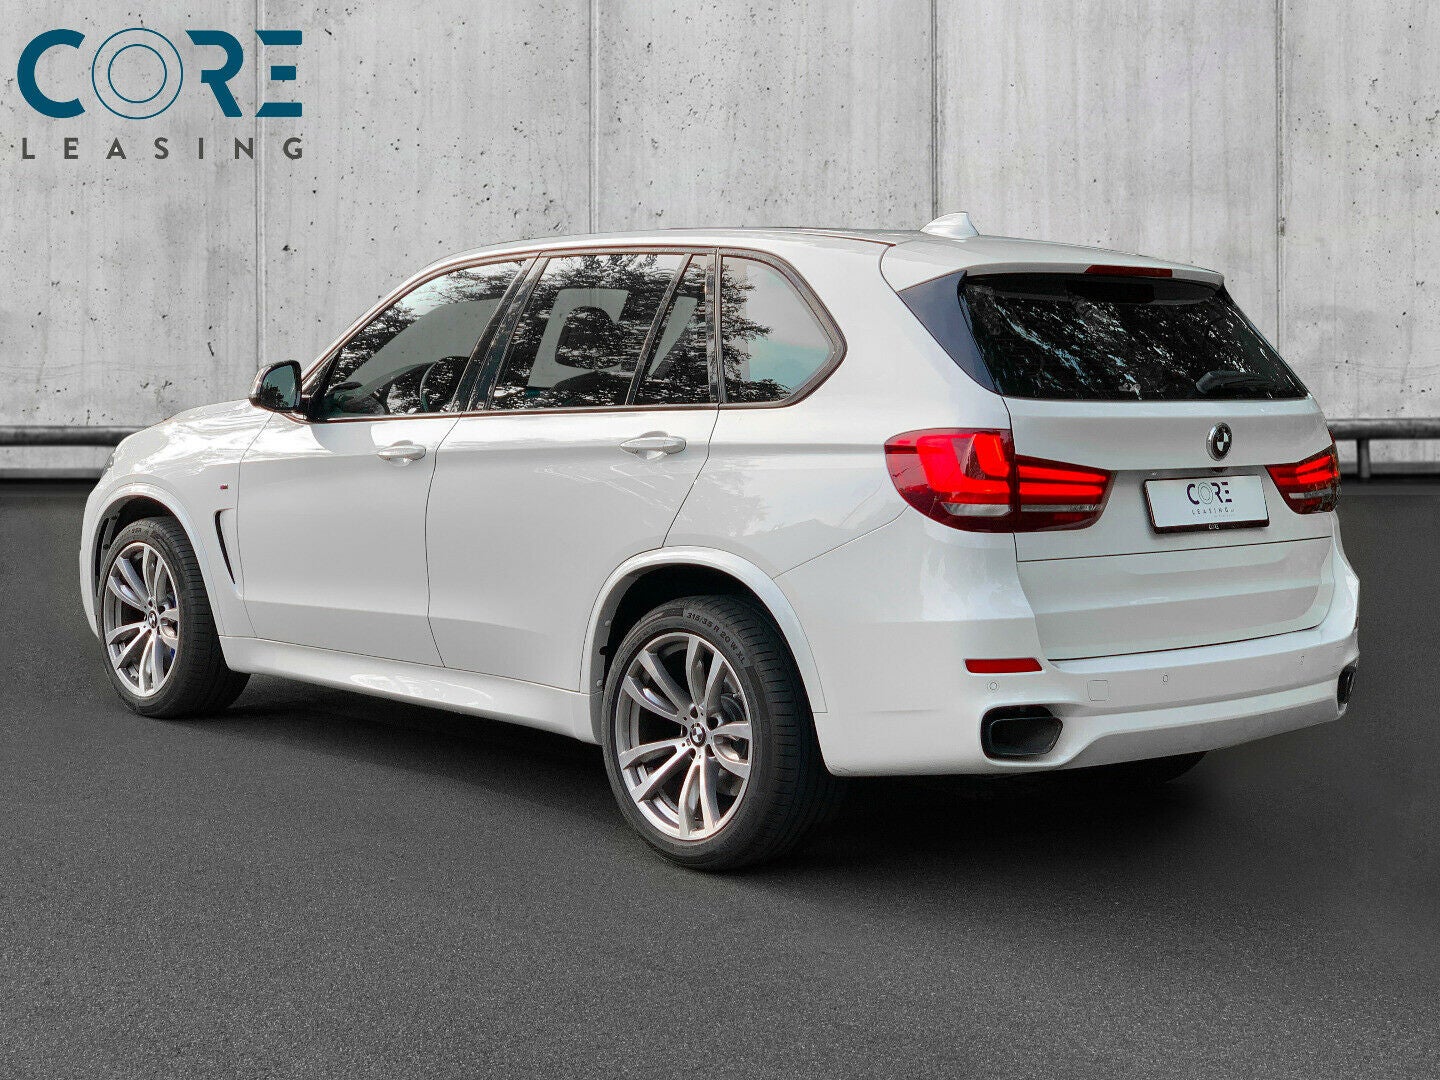 Hvidmetal BMW X5 M50d xDrive aut. fra 2014 parkeret foran en betonmur. CORE Leasing A/S er eksperter i BMW leasing.